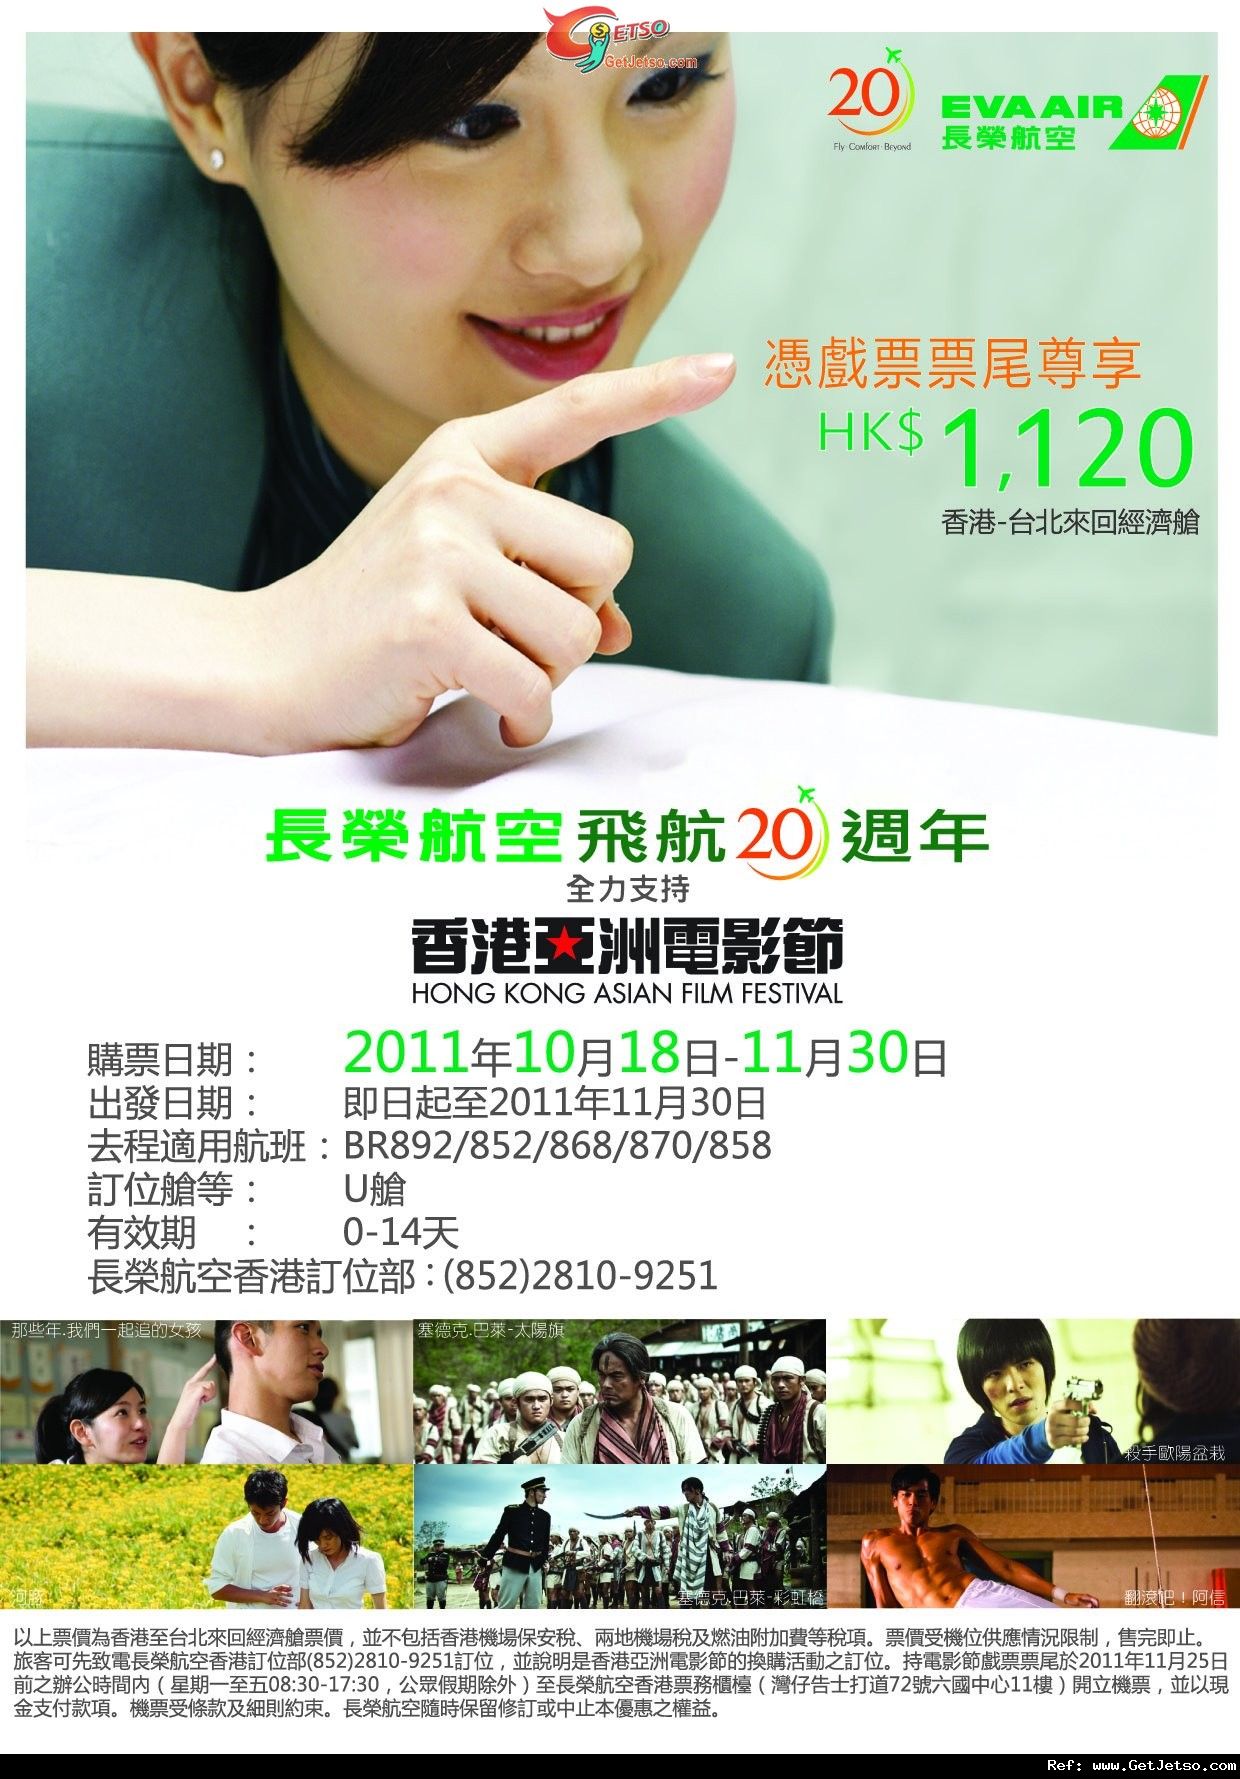 憑香港亞洲電影節2011票尾可享長榮航空20來回台北機票優惠(至11年11月8日)圖片1